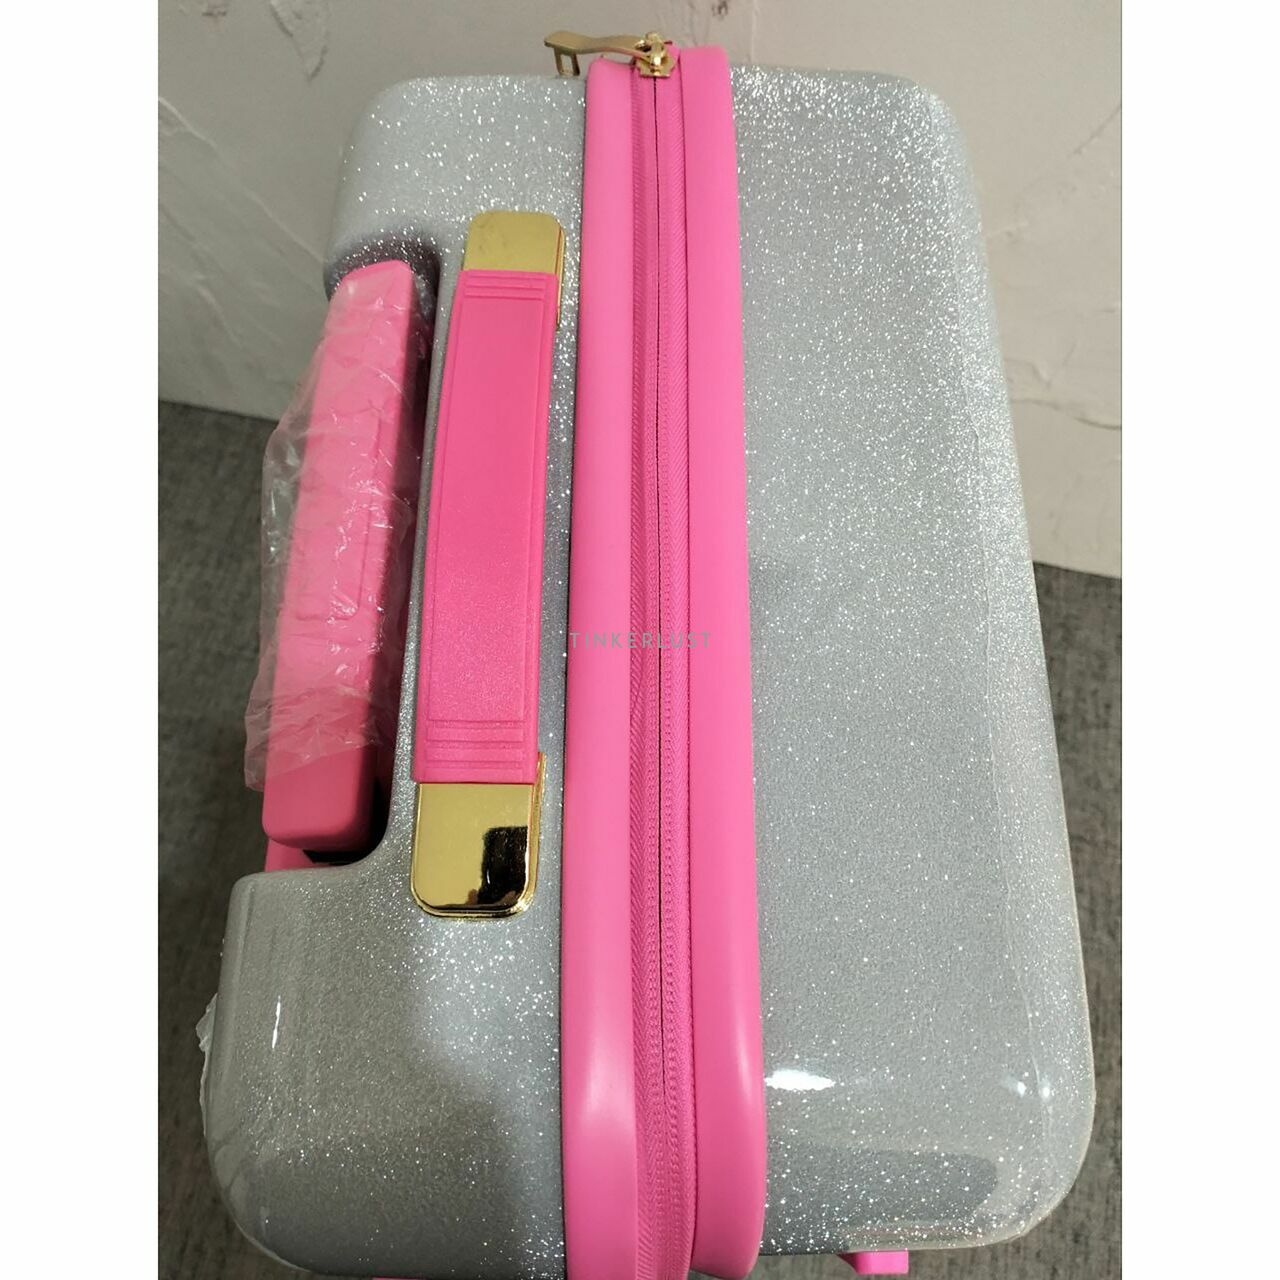 Chiara Ferragni Maxi Logomania Cabin Suitcase Luggage in Silver/Pink 